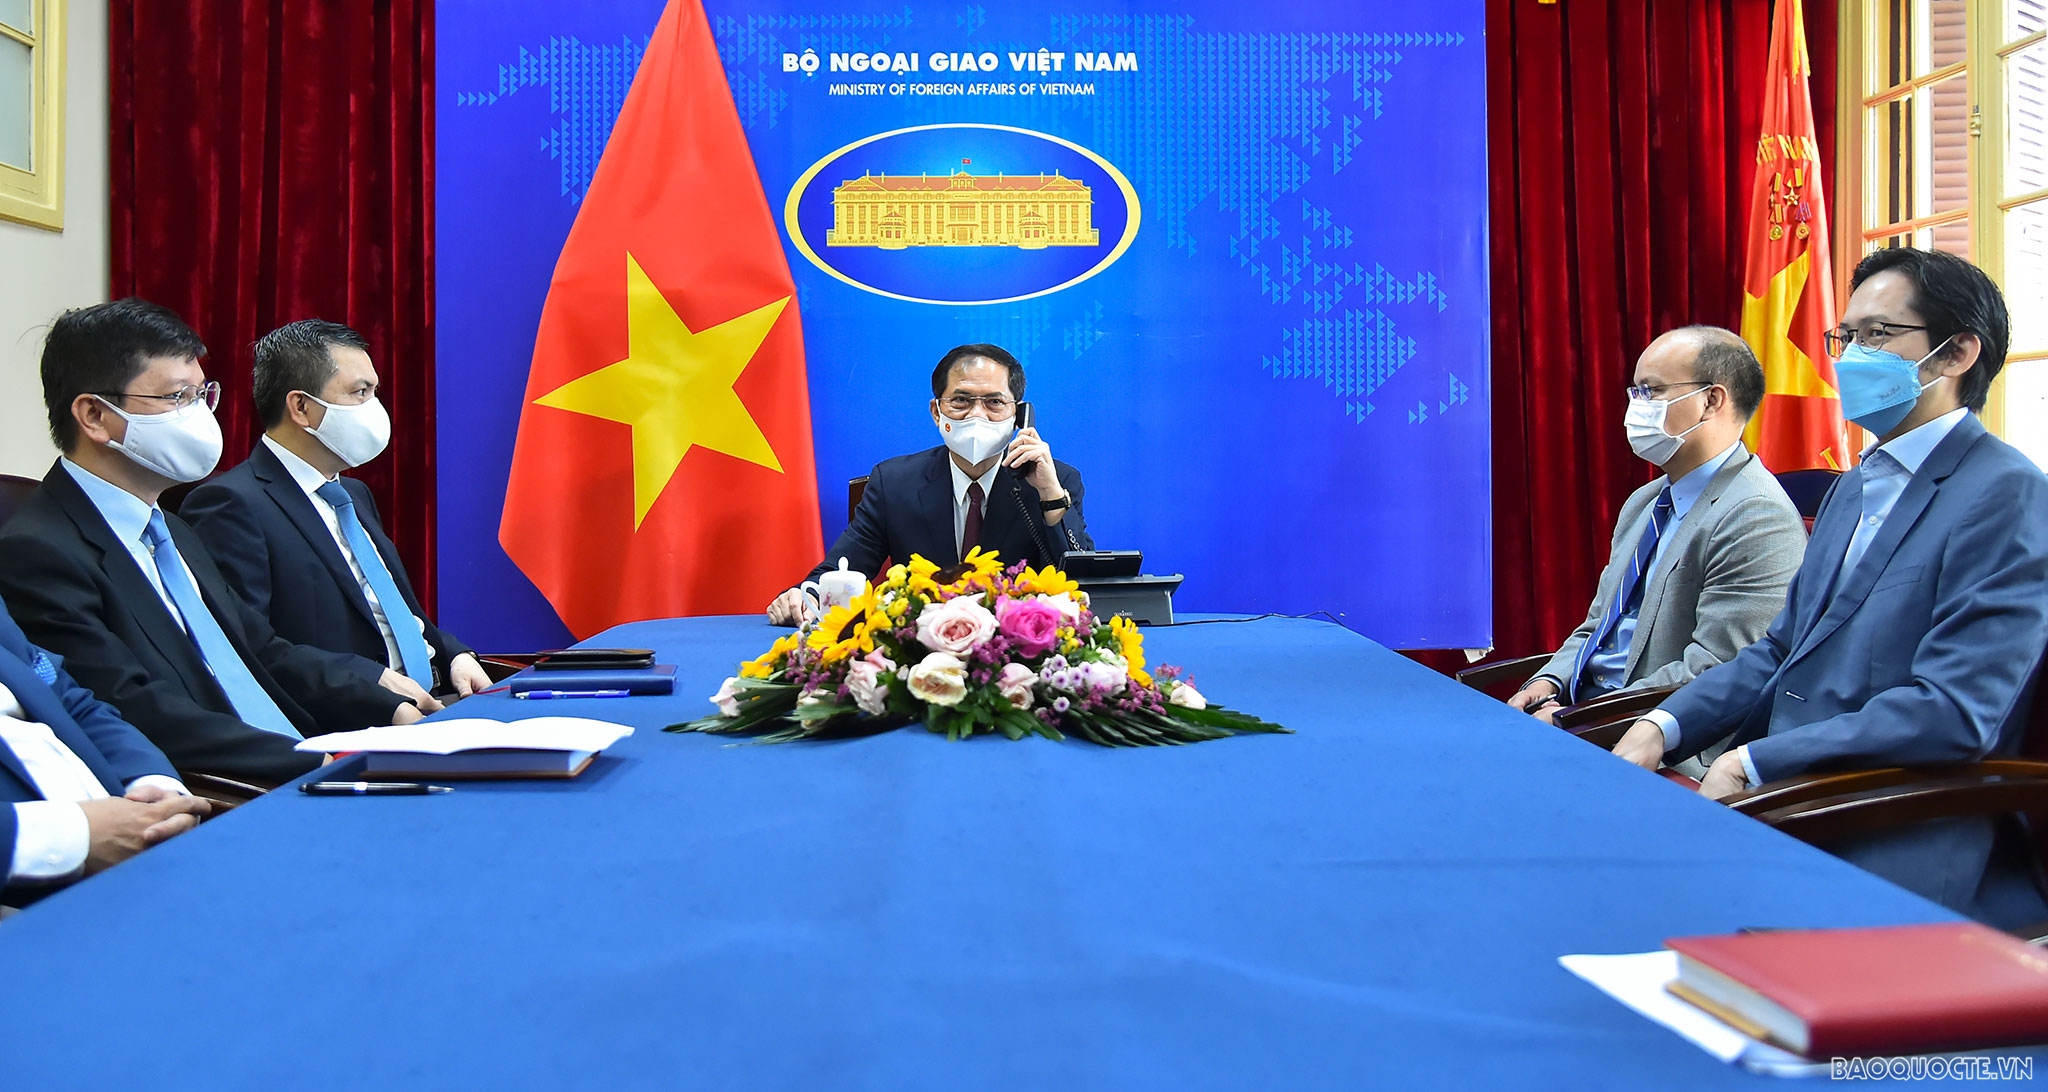 Điện đàm với Ngoại trưởng Antony Blinken, Bộ trưởng Ngoại giao Bùi Thanh Sơn cảm ơn Hoa Kỳ đã hỗ trợ Việt Nam tiếp cận vaccine ngừa Covid-19. (Ảnh: Tuấn Anh)